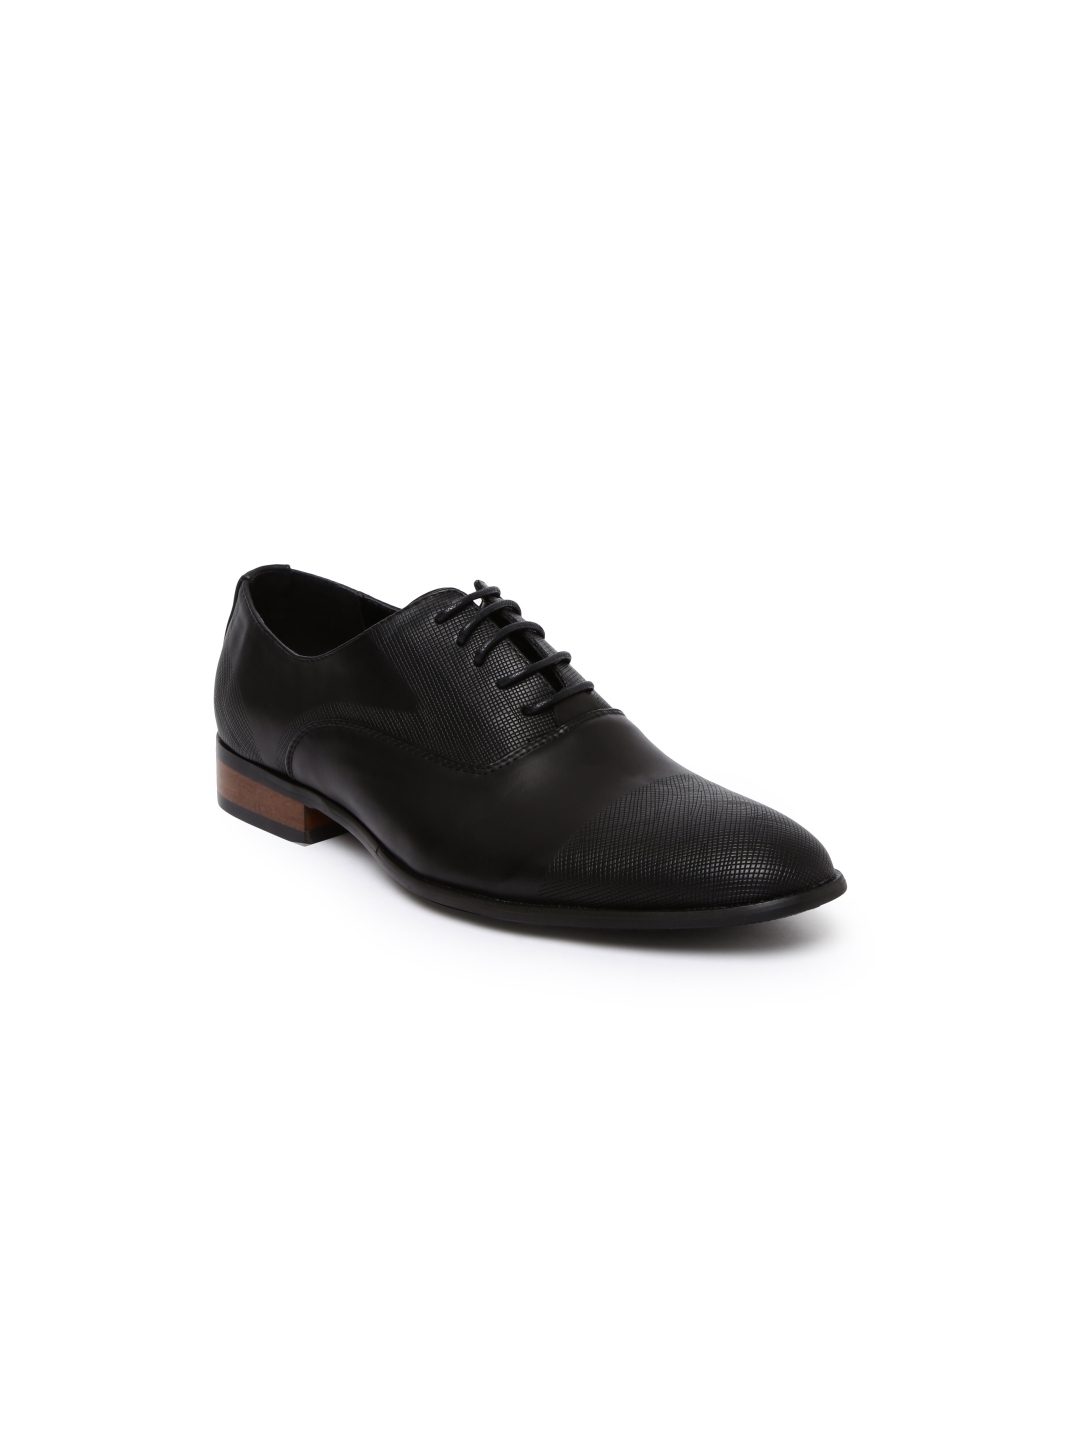 Buy Tresmode Men Black Formal Shoes - Formal Shoes for Men 2069537 | Myntra